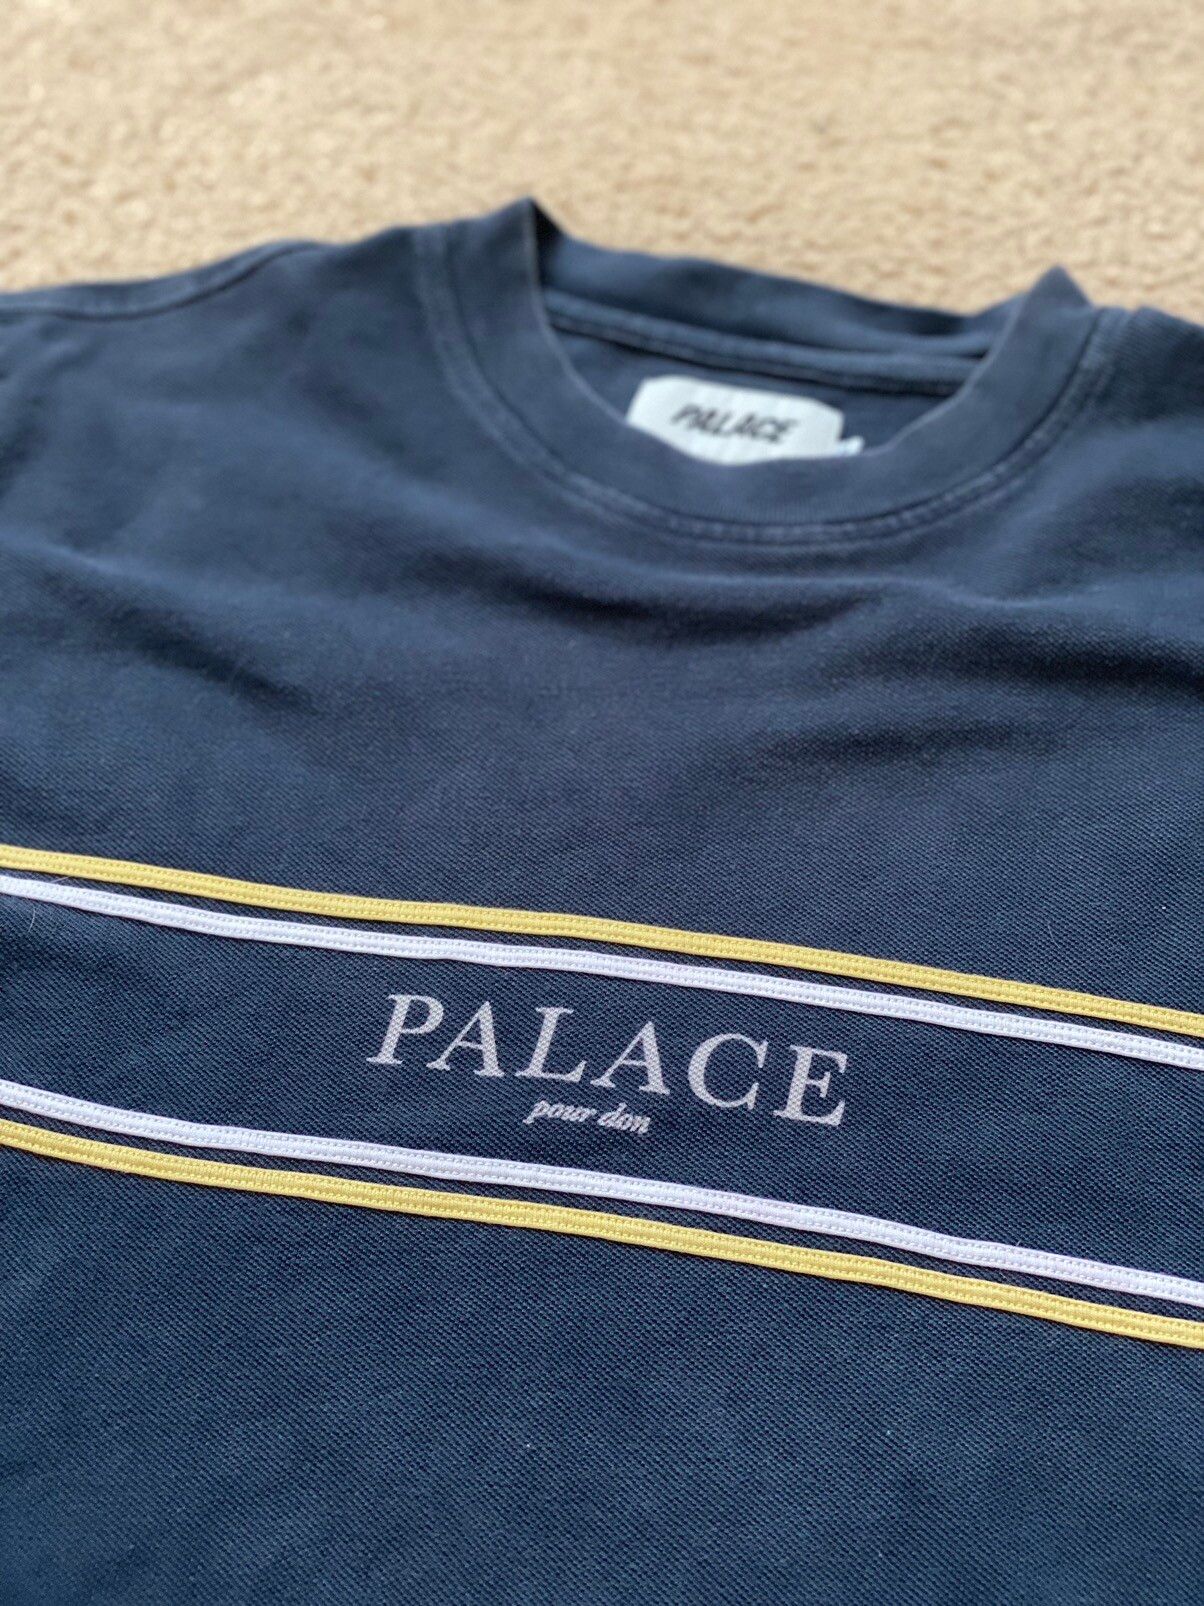 Palace Palace Pour Don T-Shirt Size US M / EU 48-50 / 2 - 2 Preview